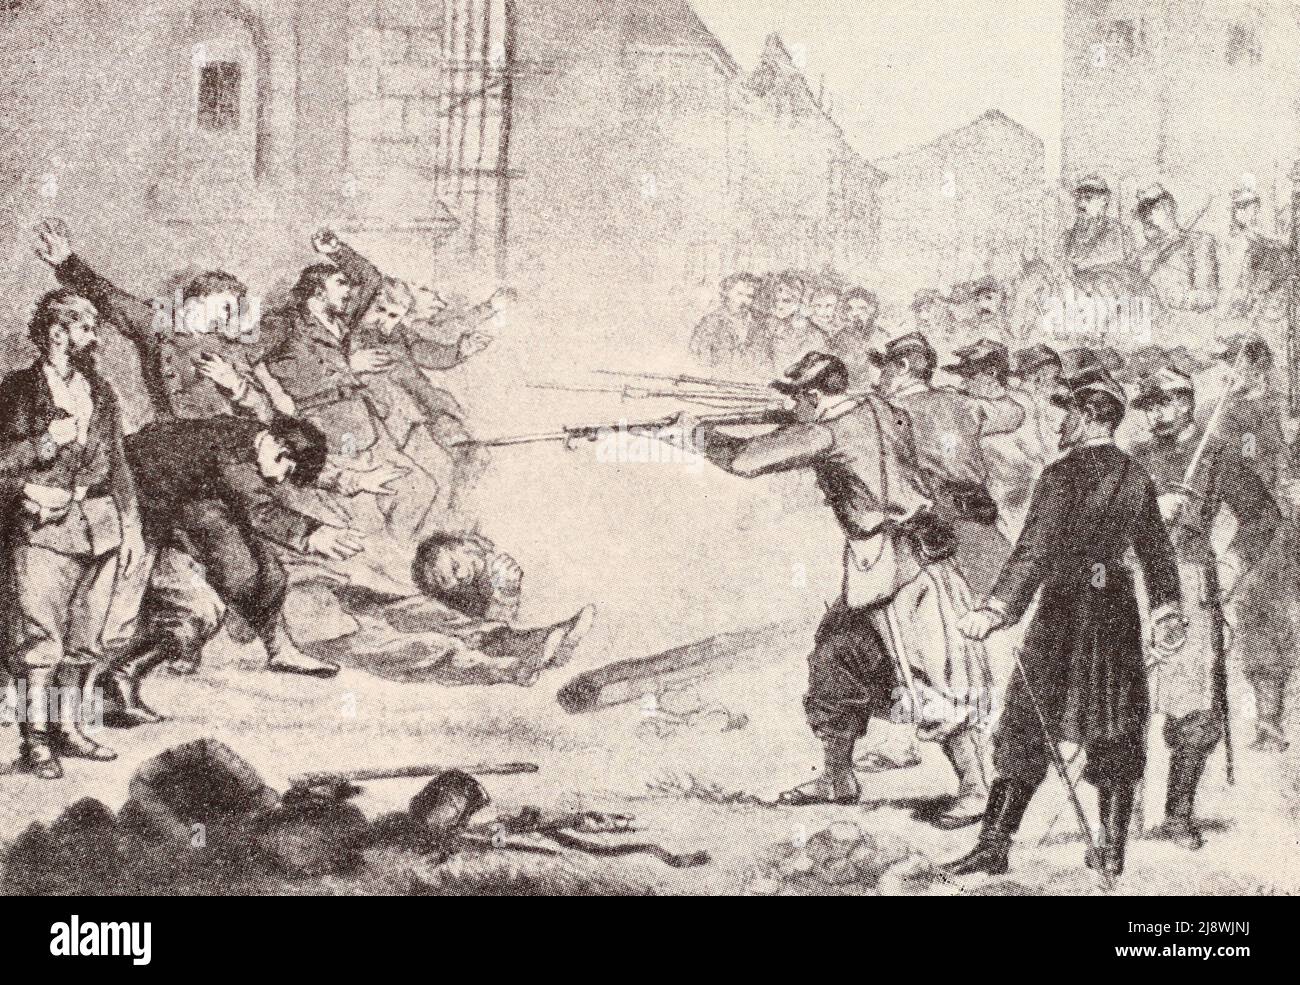 La ejecución de los Comundos en una de las calles de París. Dibujo de 1871. Foto de stock